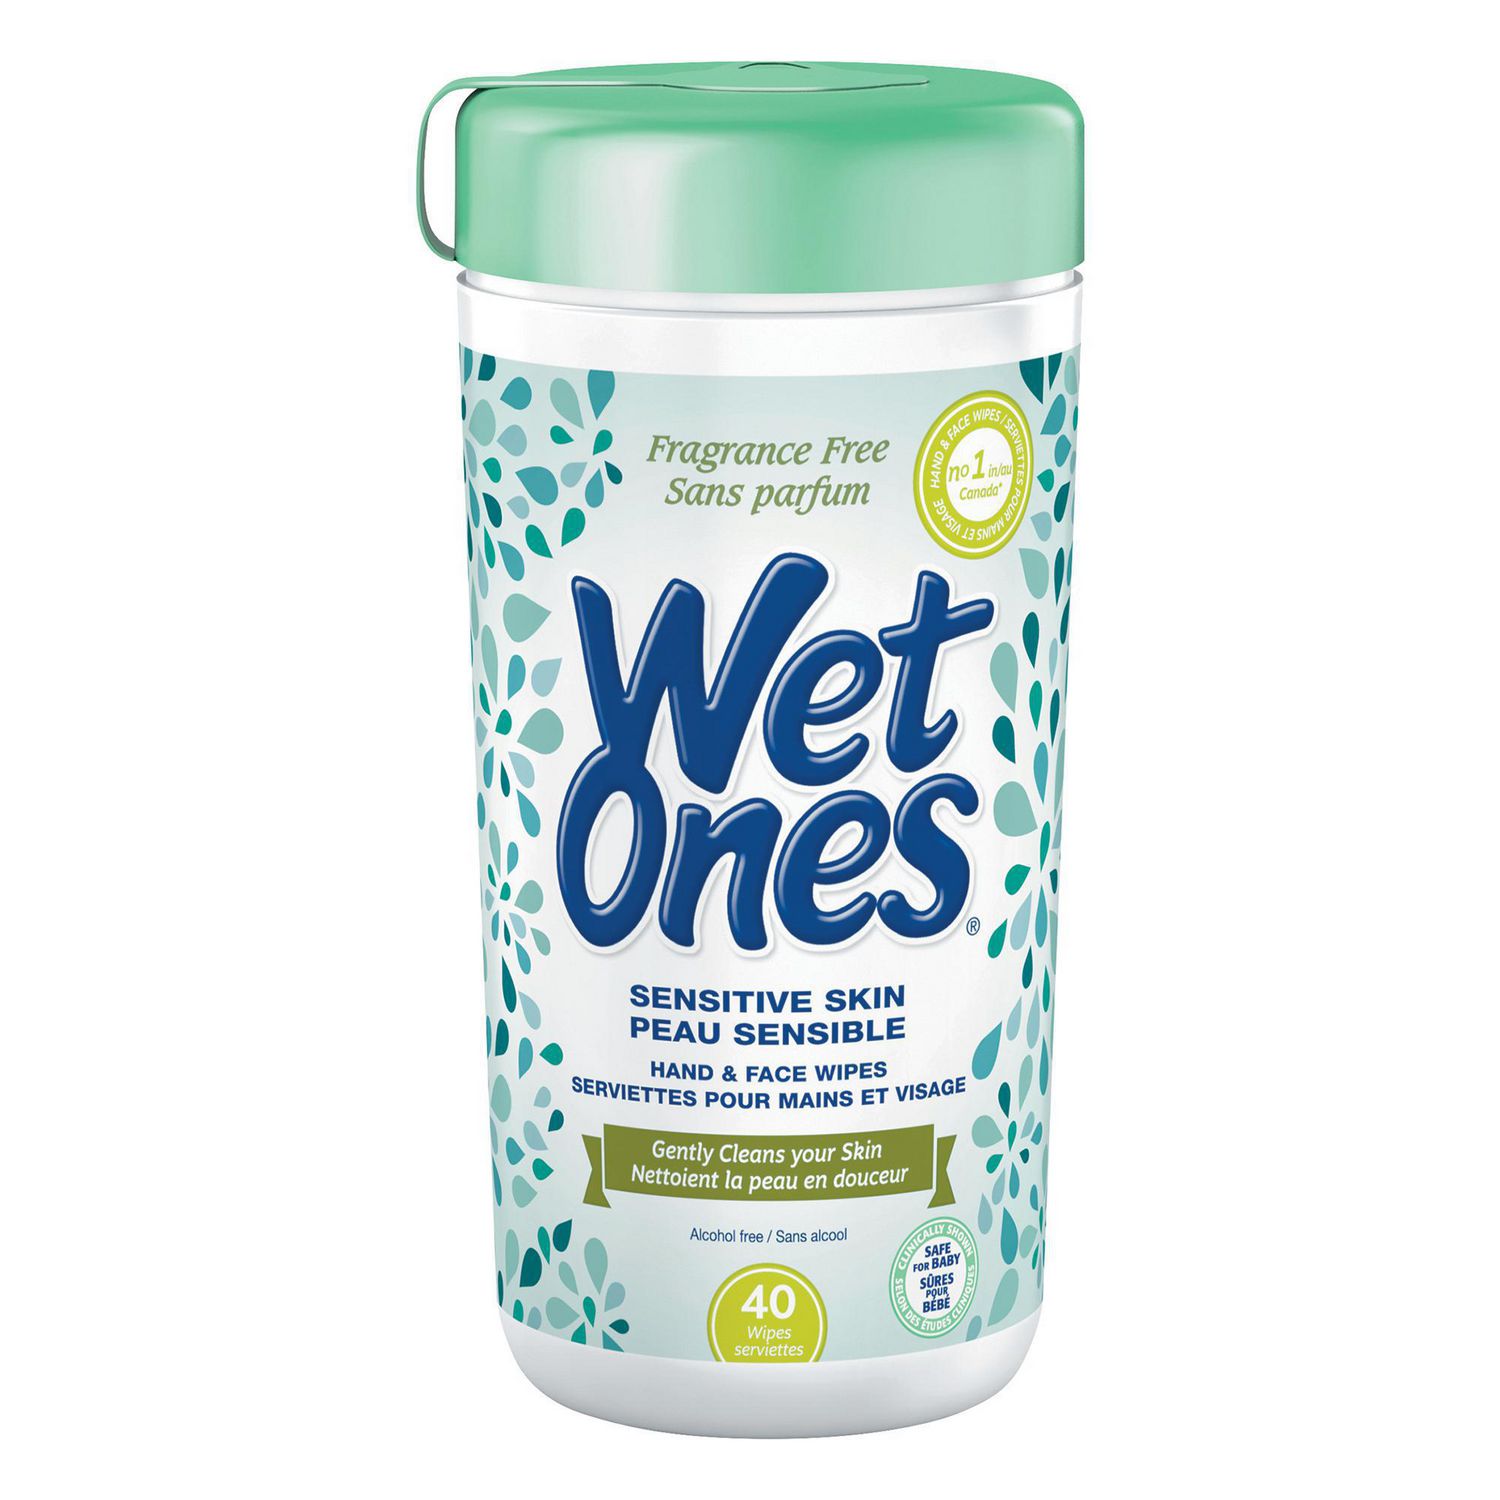 Wet Ones Wipes, Hands & Face, Sensitive Skin, Fragrance Free, Shop